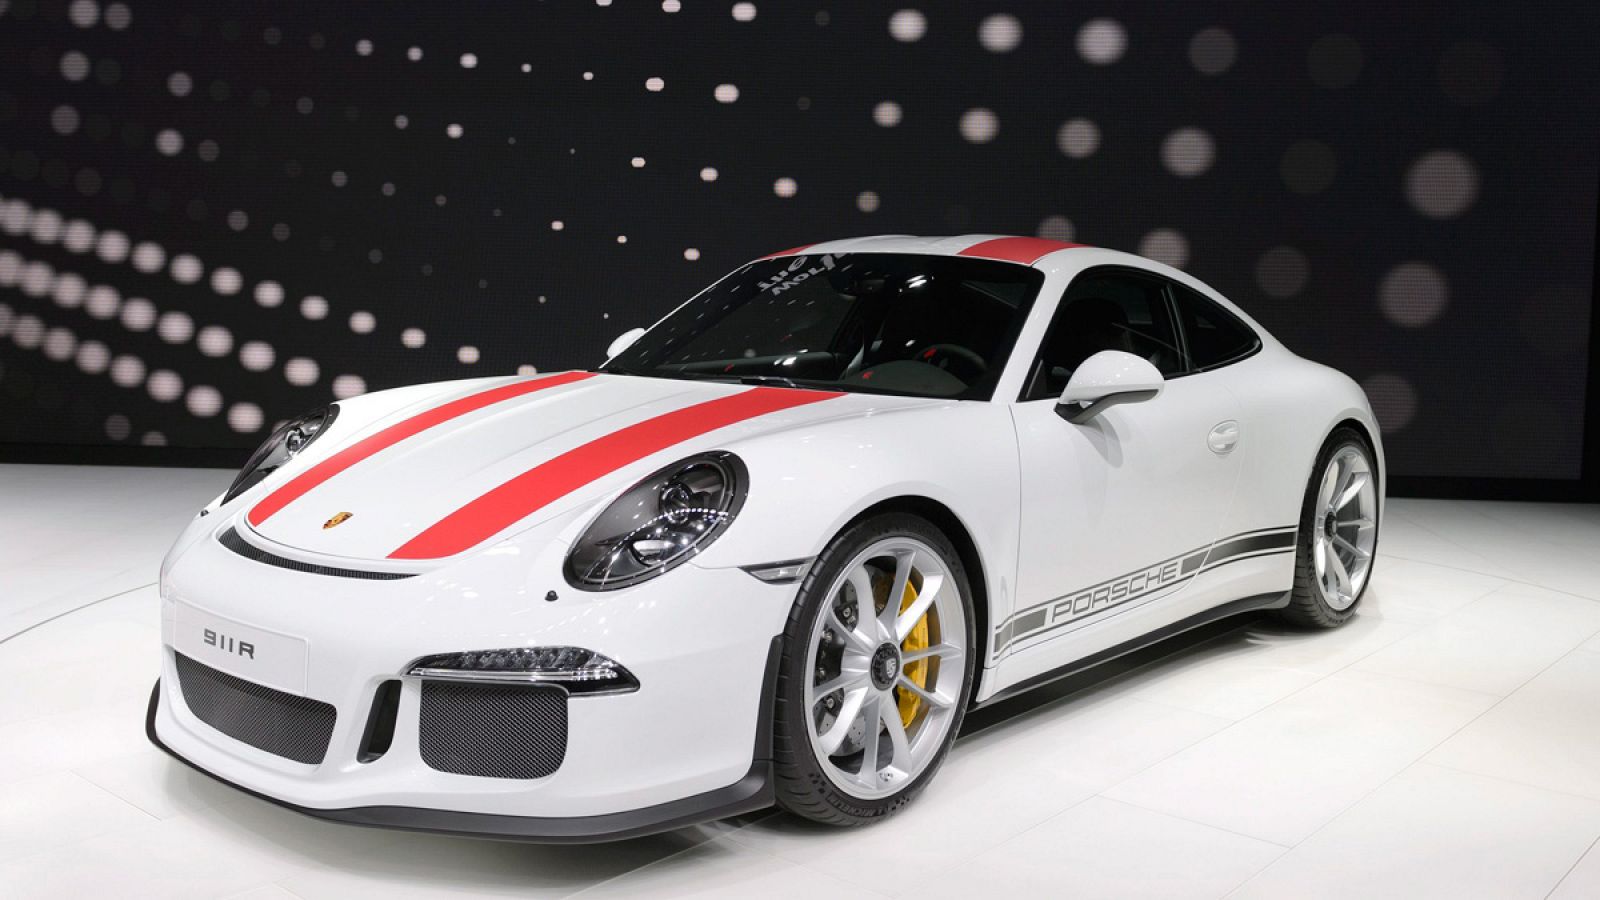 El nuevo Porsche 911 R en el Salón del Automóvil de Ginebra (Suiza)